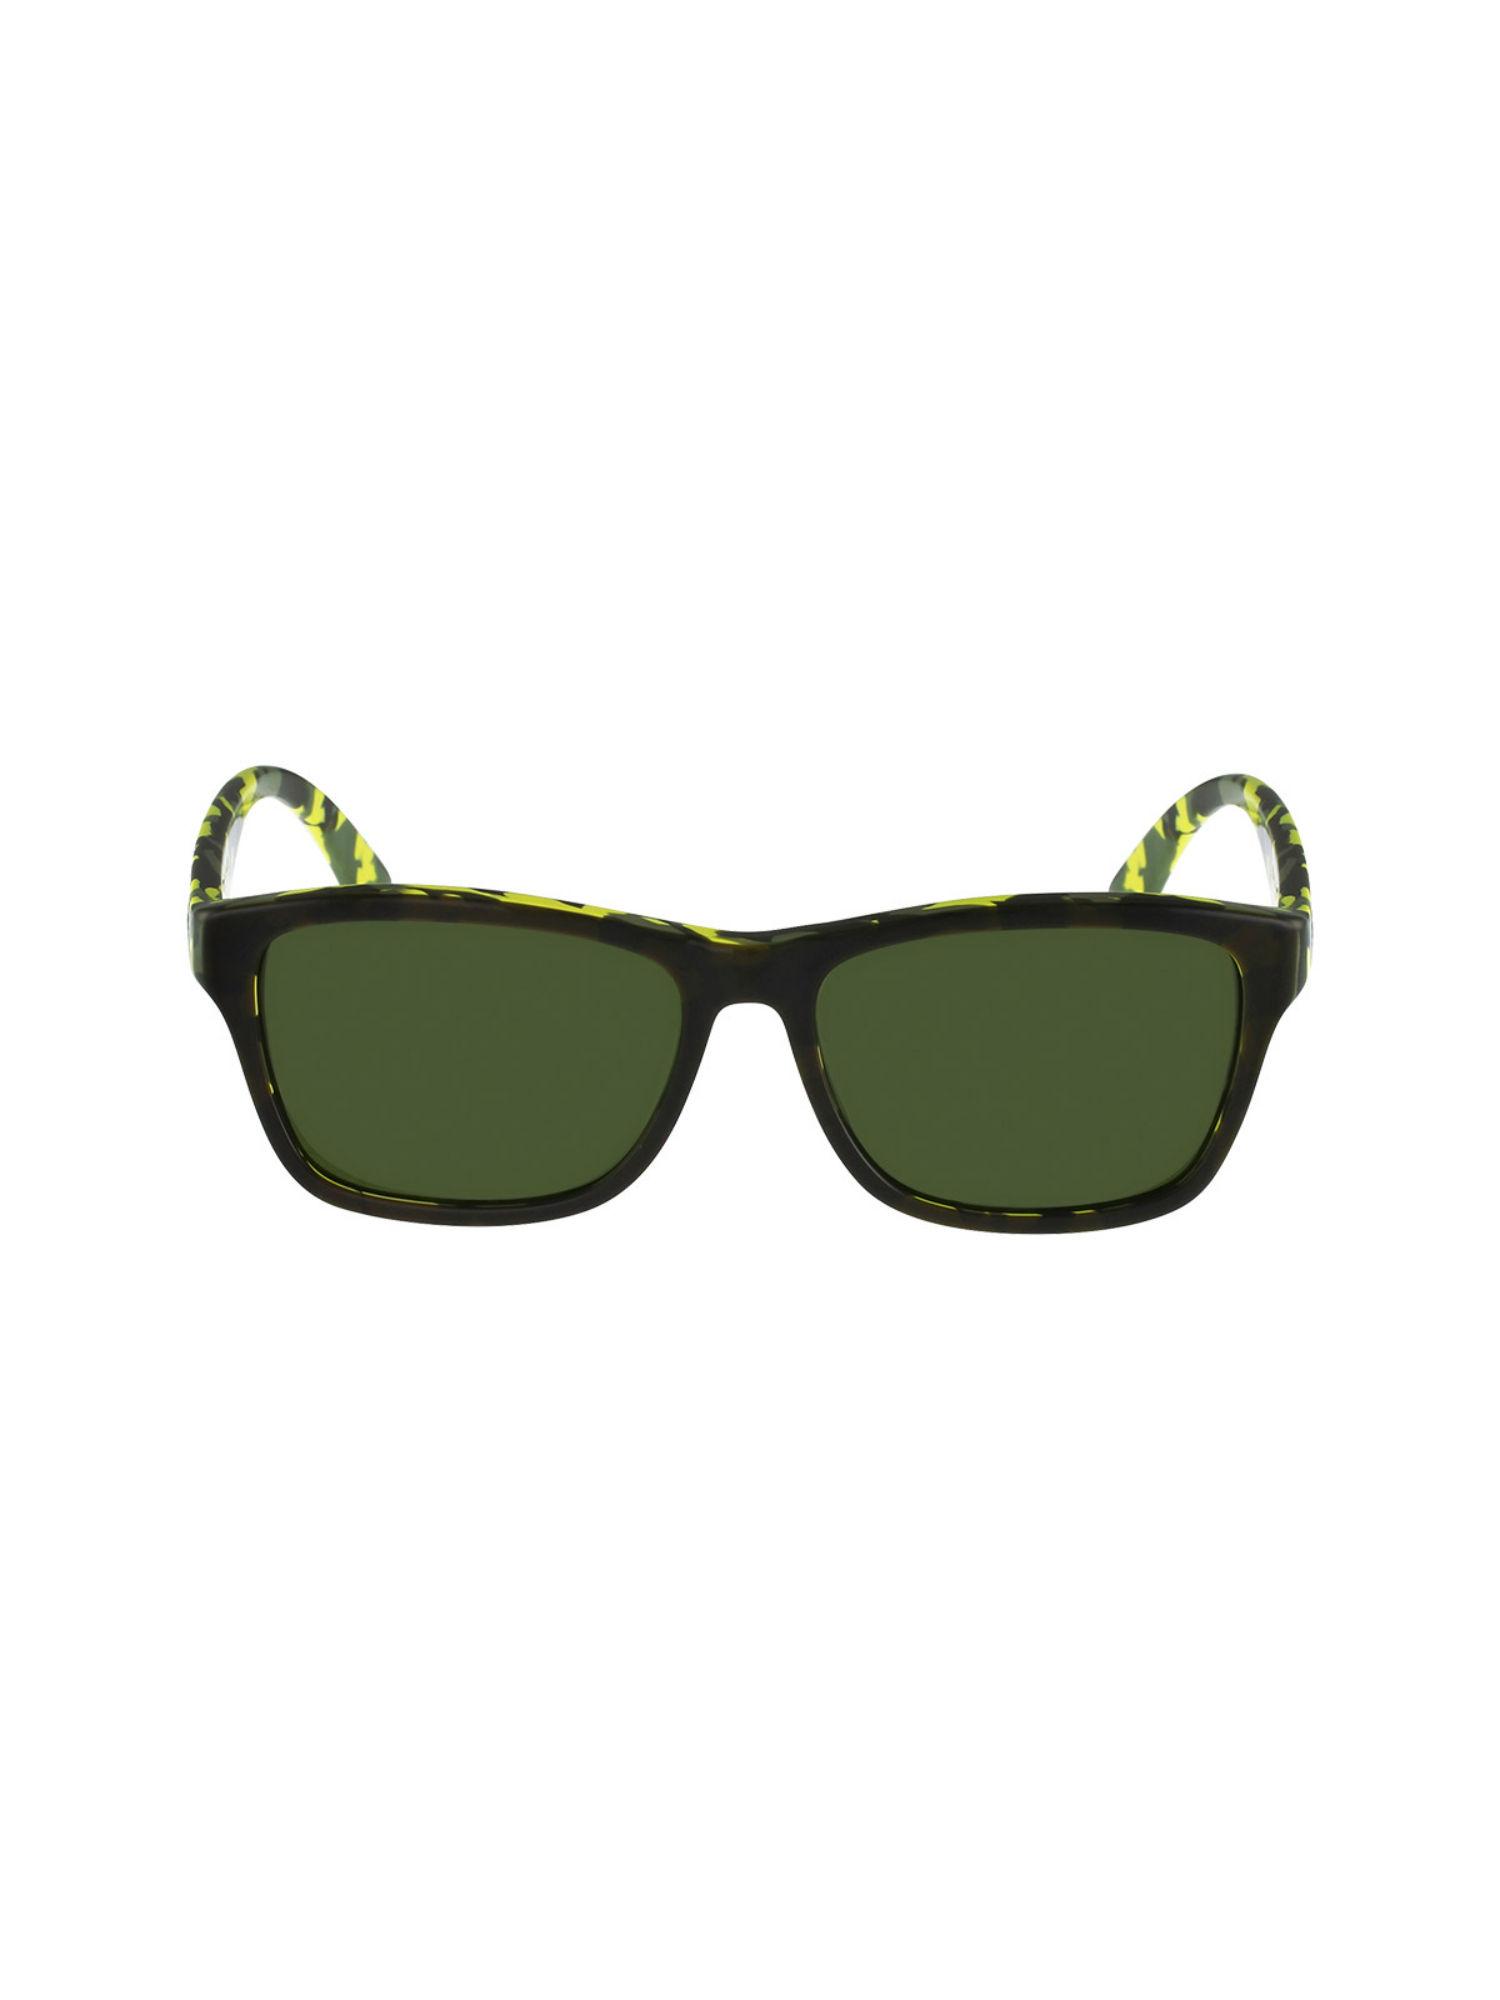 wayfarer-sunglasses-with-green-lens-for-unisex